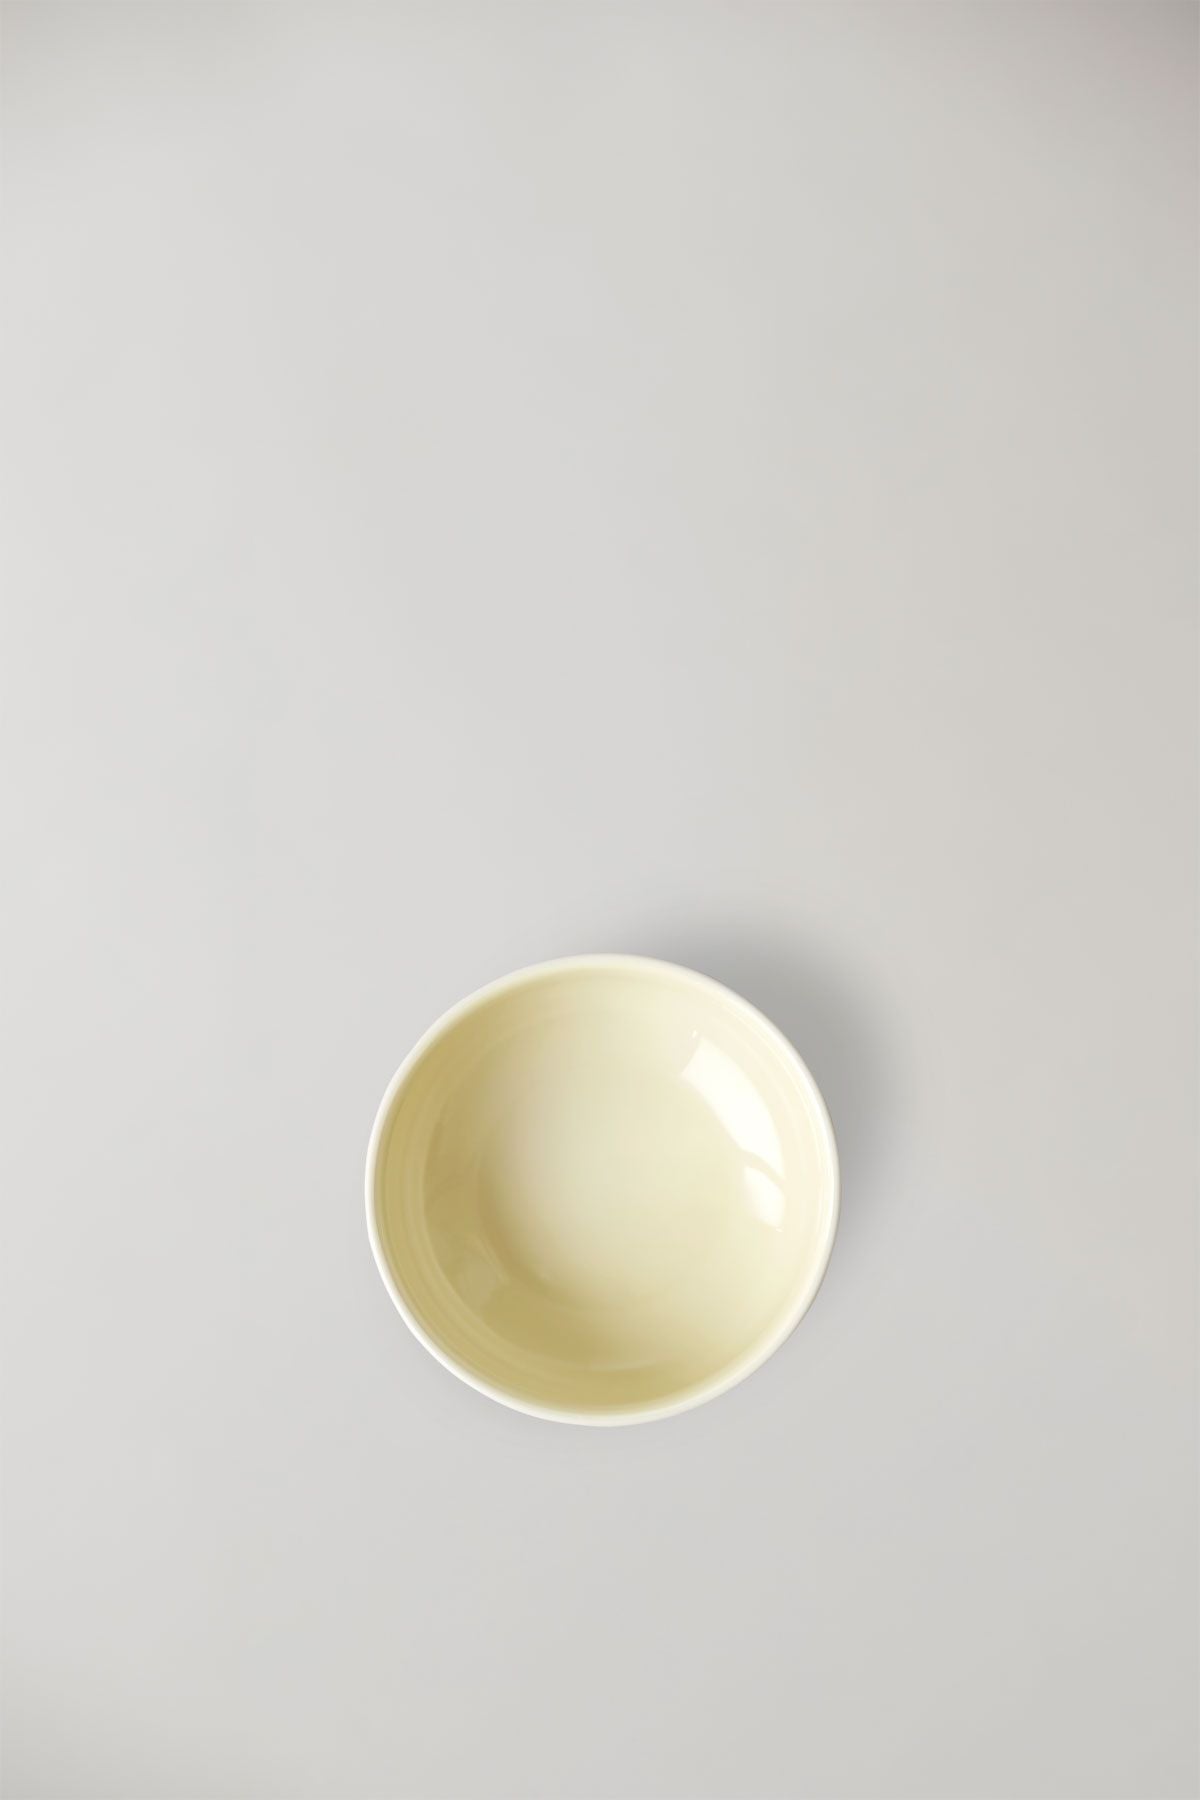 Studio o sadě Clayware 2 Bowls, slonoviny/žlutá